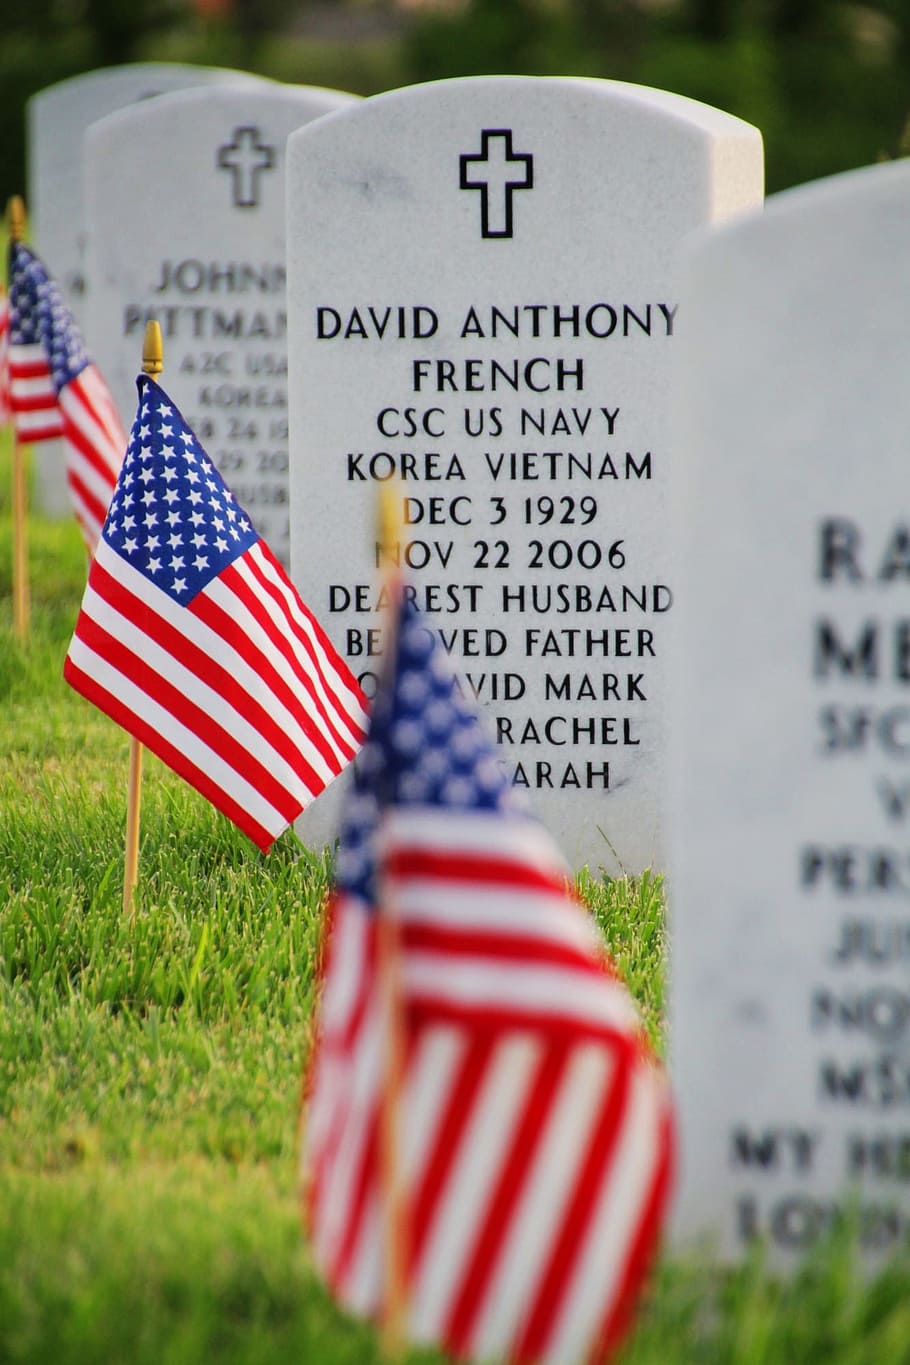 bandera estadounidense, estados unidos, banderas, cementerio, memorial, bandera, patriotismo, tumba, lápida sepulcral, militar